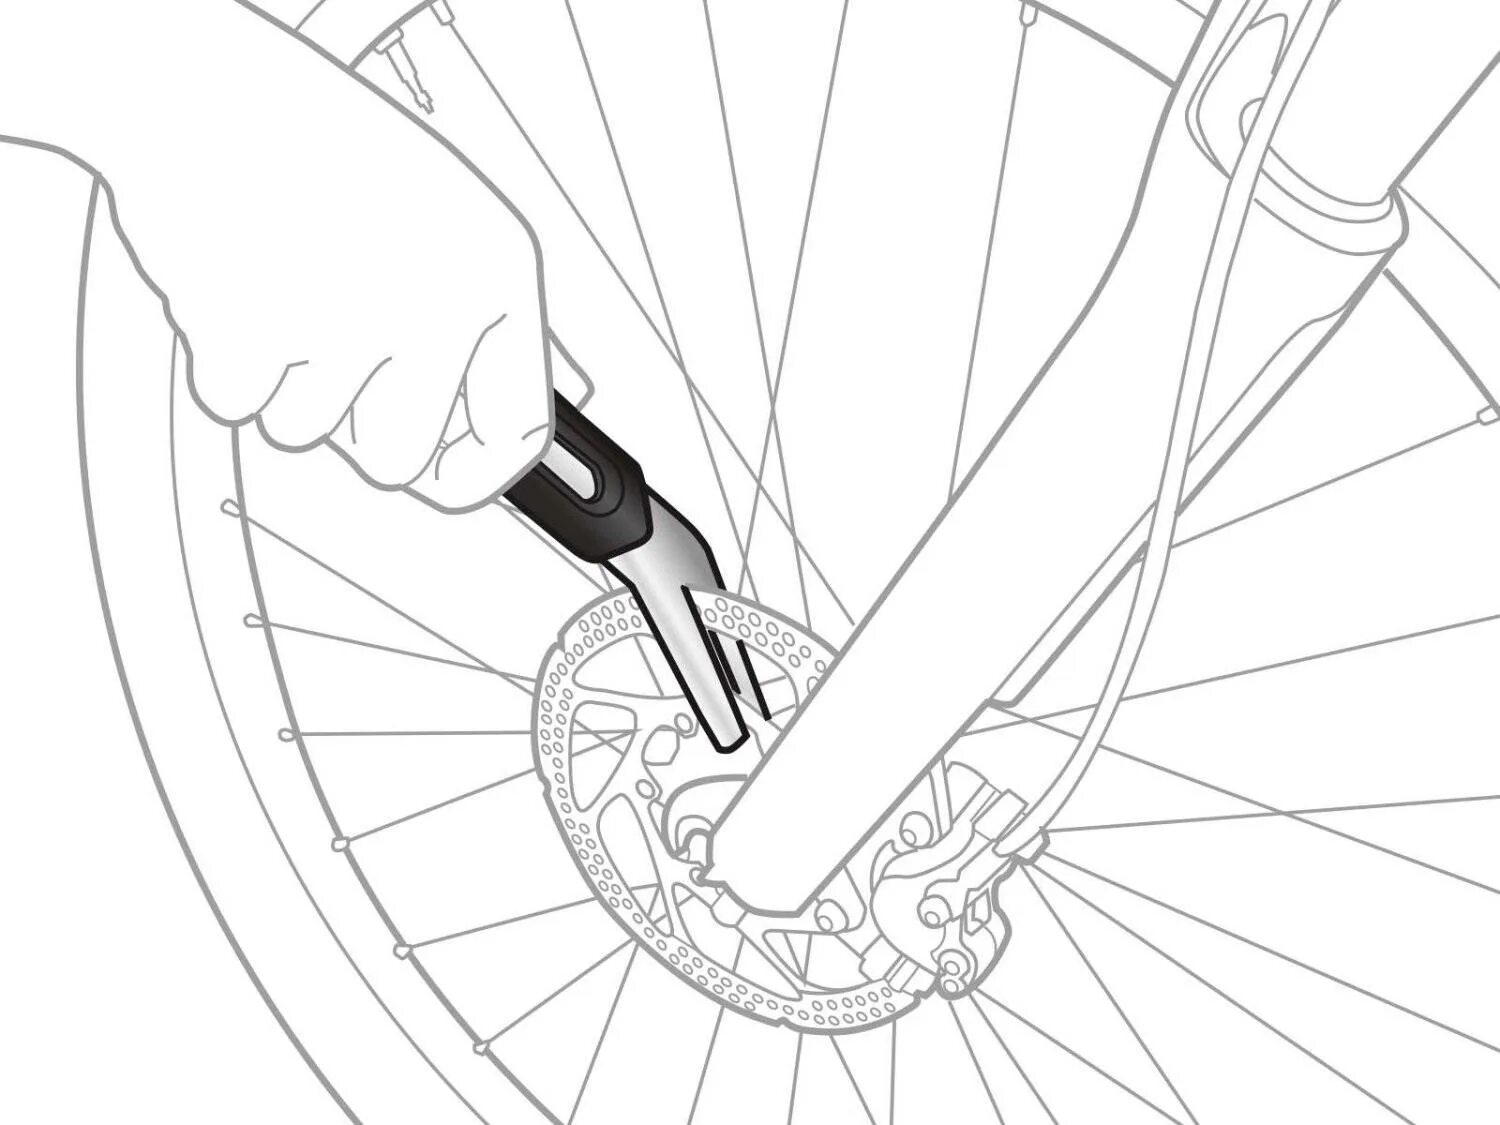 Topeak приспособления для правки тормозных дисков Rotor Tru. Инструмент для выравнивания ротора велосипедного дискового тормоза. Ключ для правки тормозных дисков велосипеда триал. Инструмент для правки велосипедных тормозных дисков. Как выровнять колесо на велосипеде